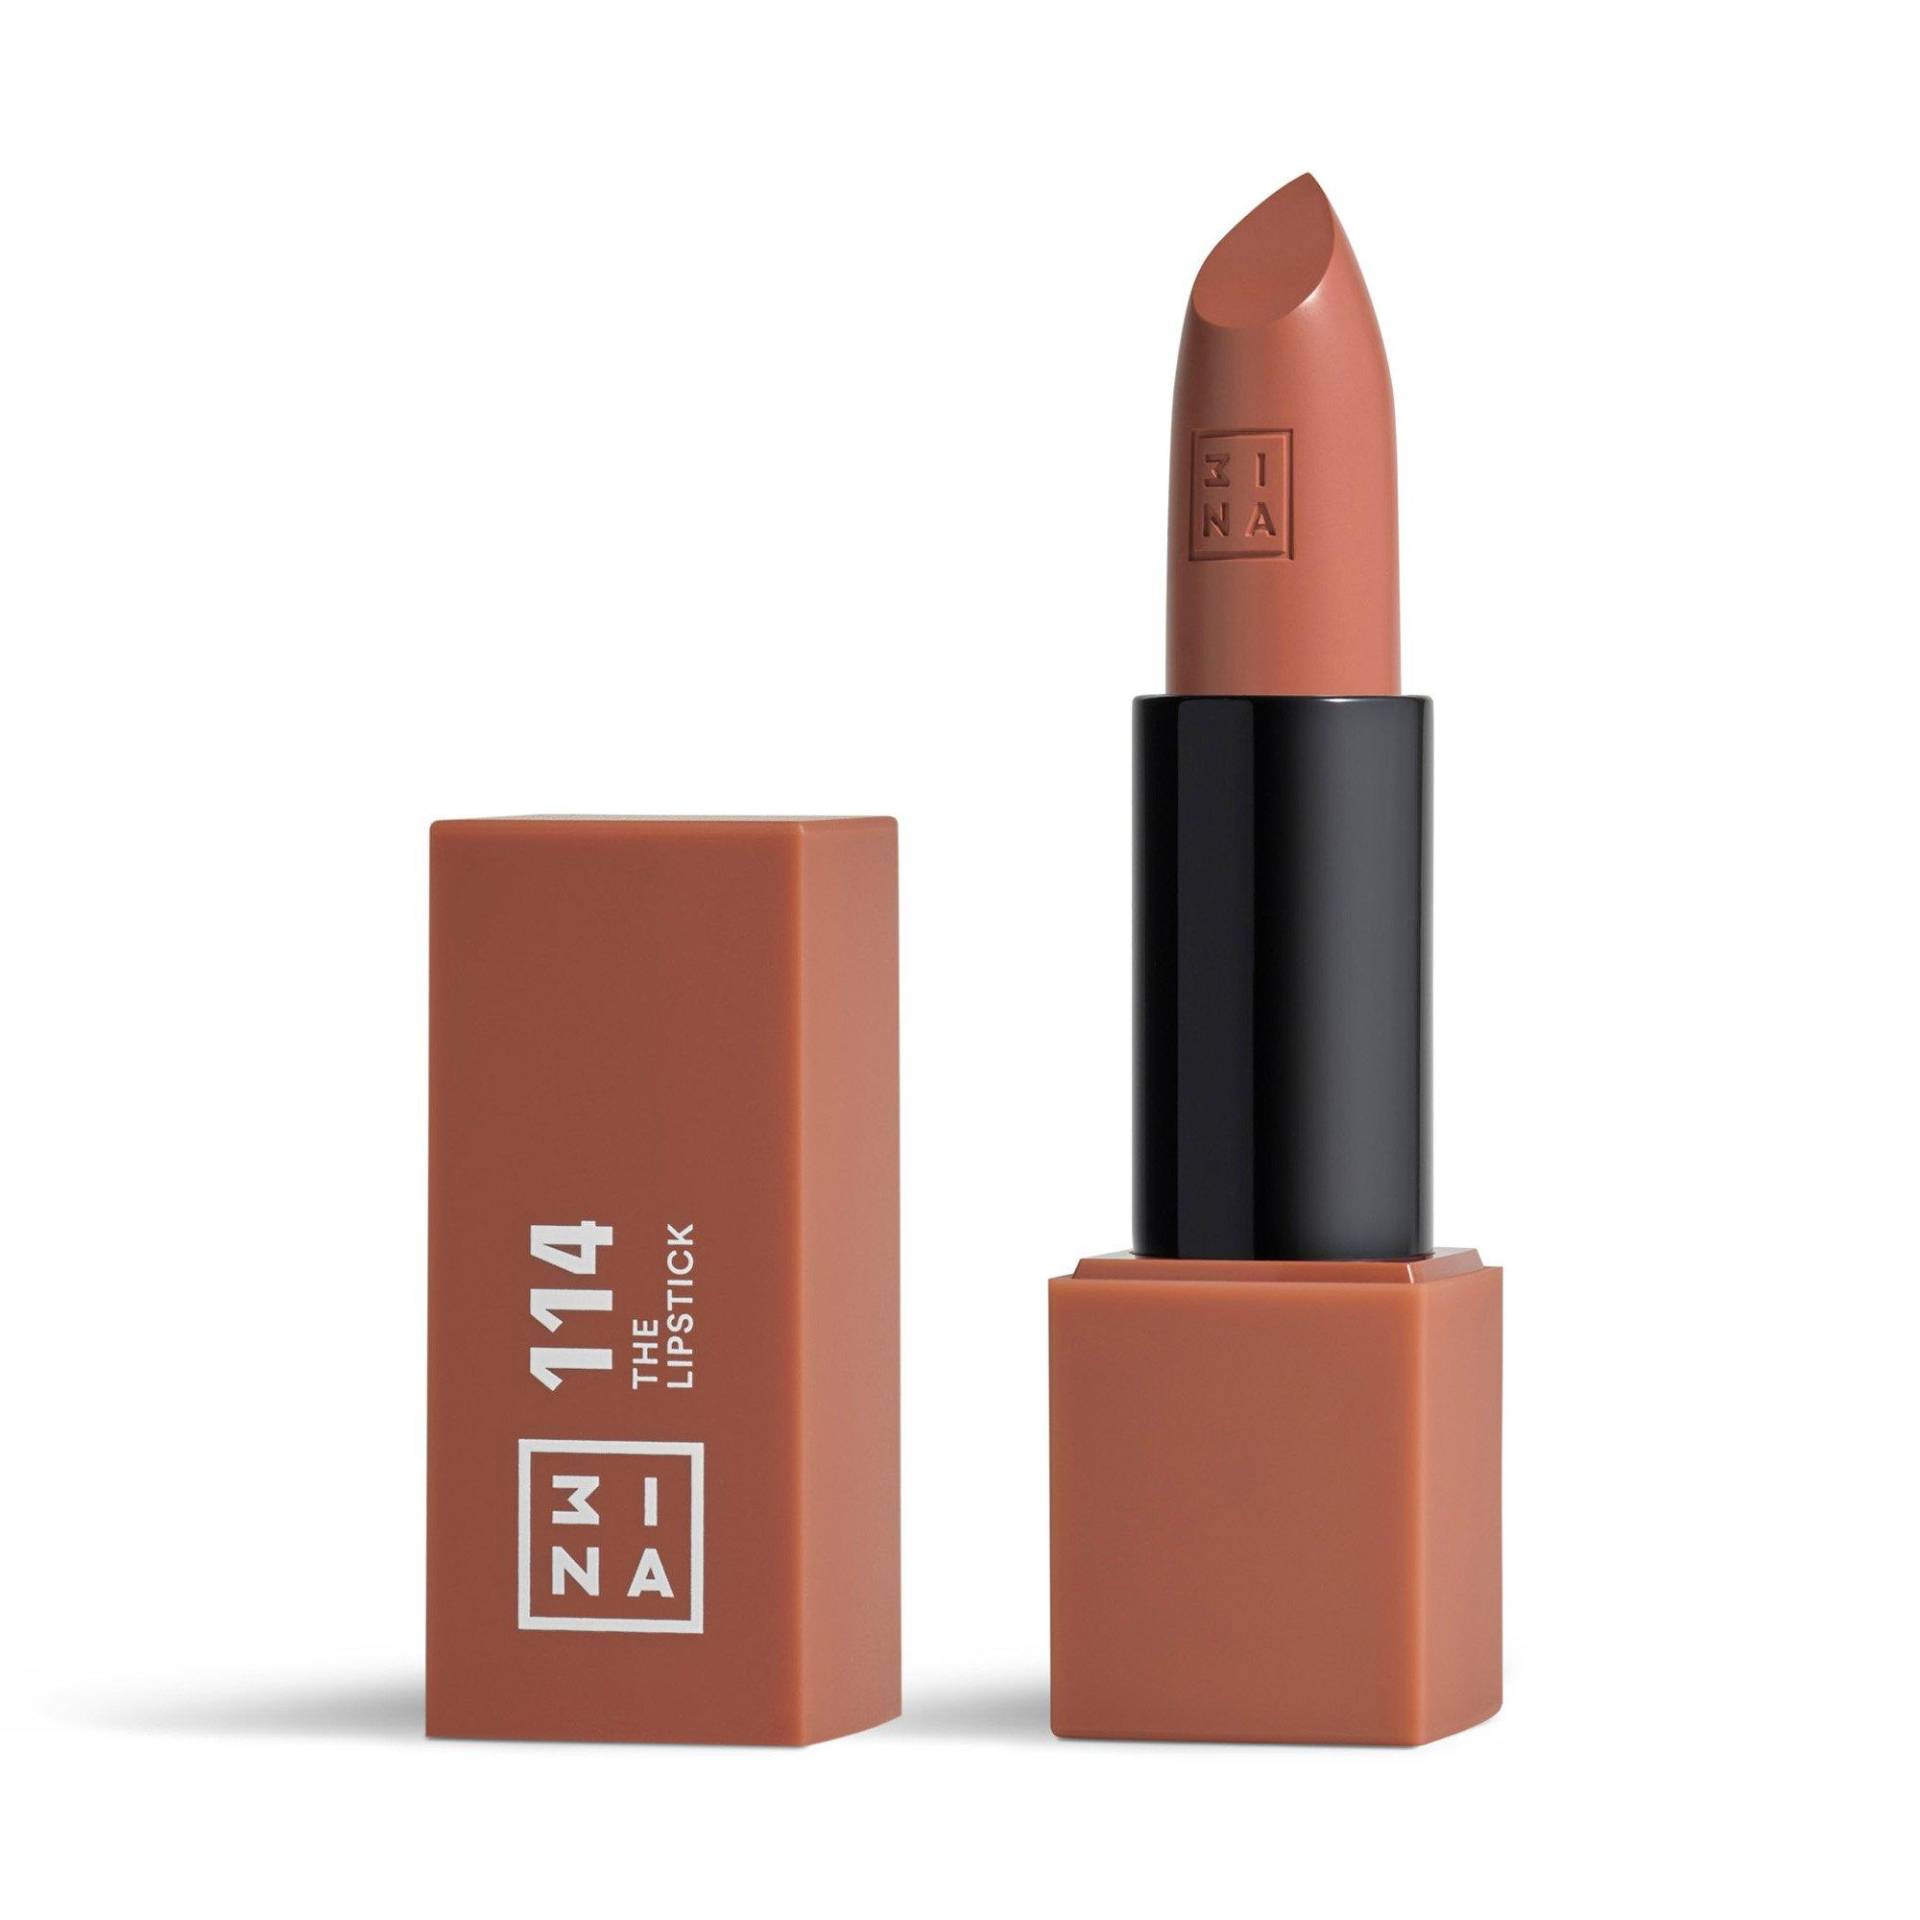 The Lipstick Damen von 3INA